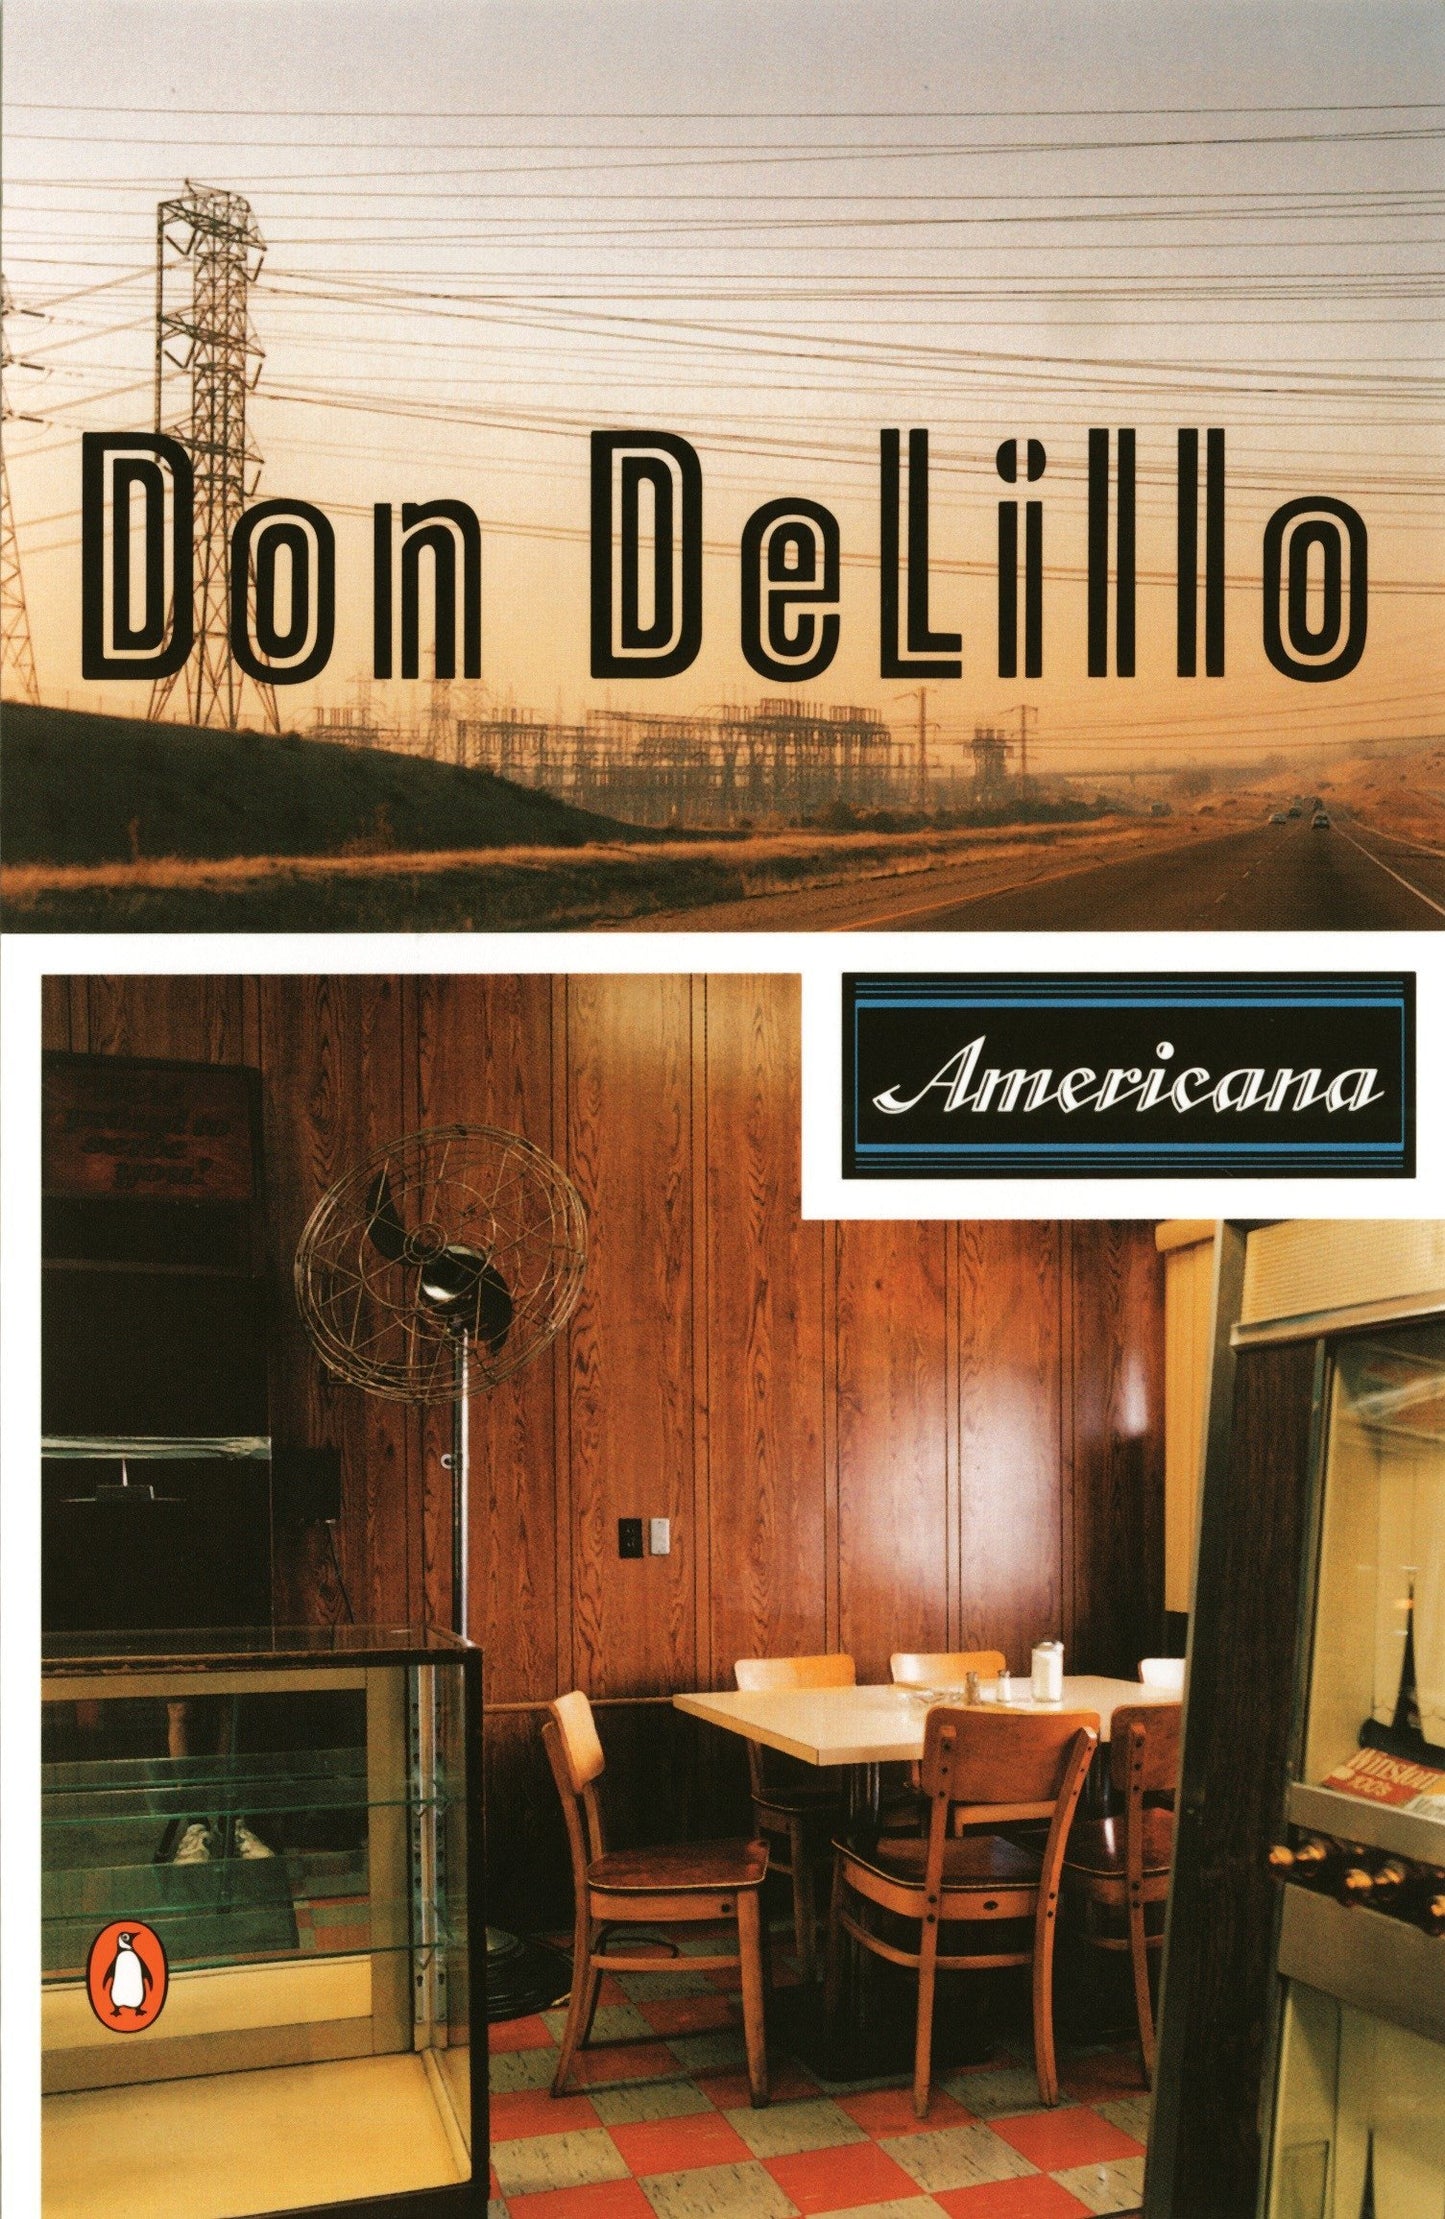 Americana, by Don Delillo